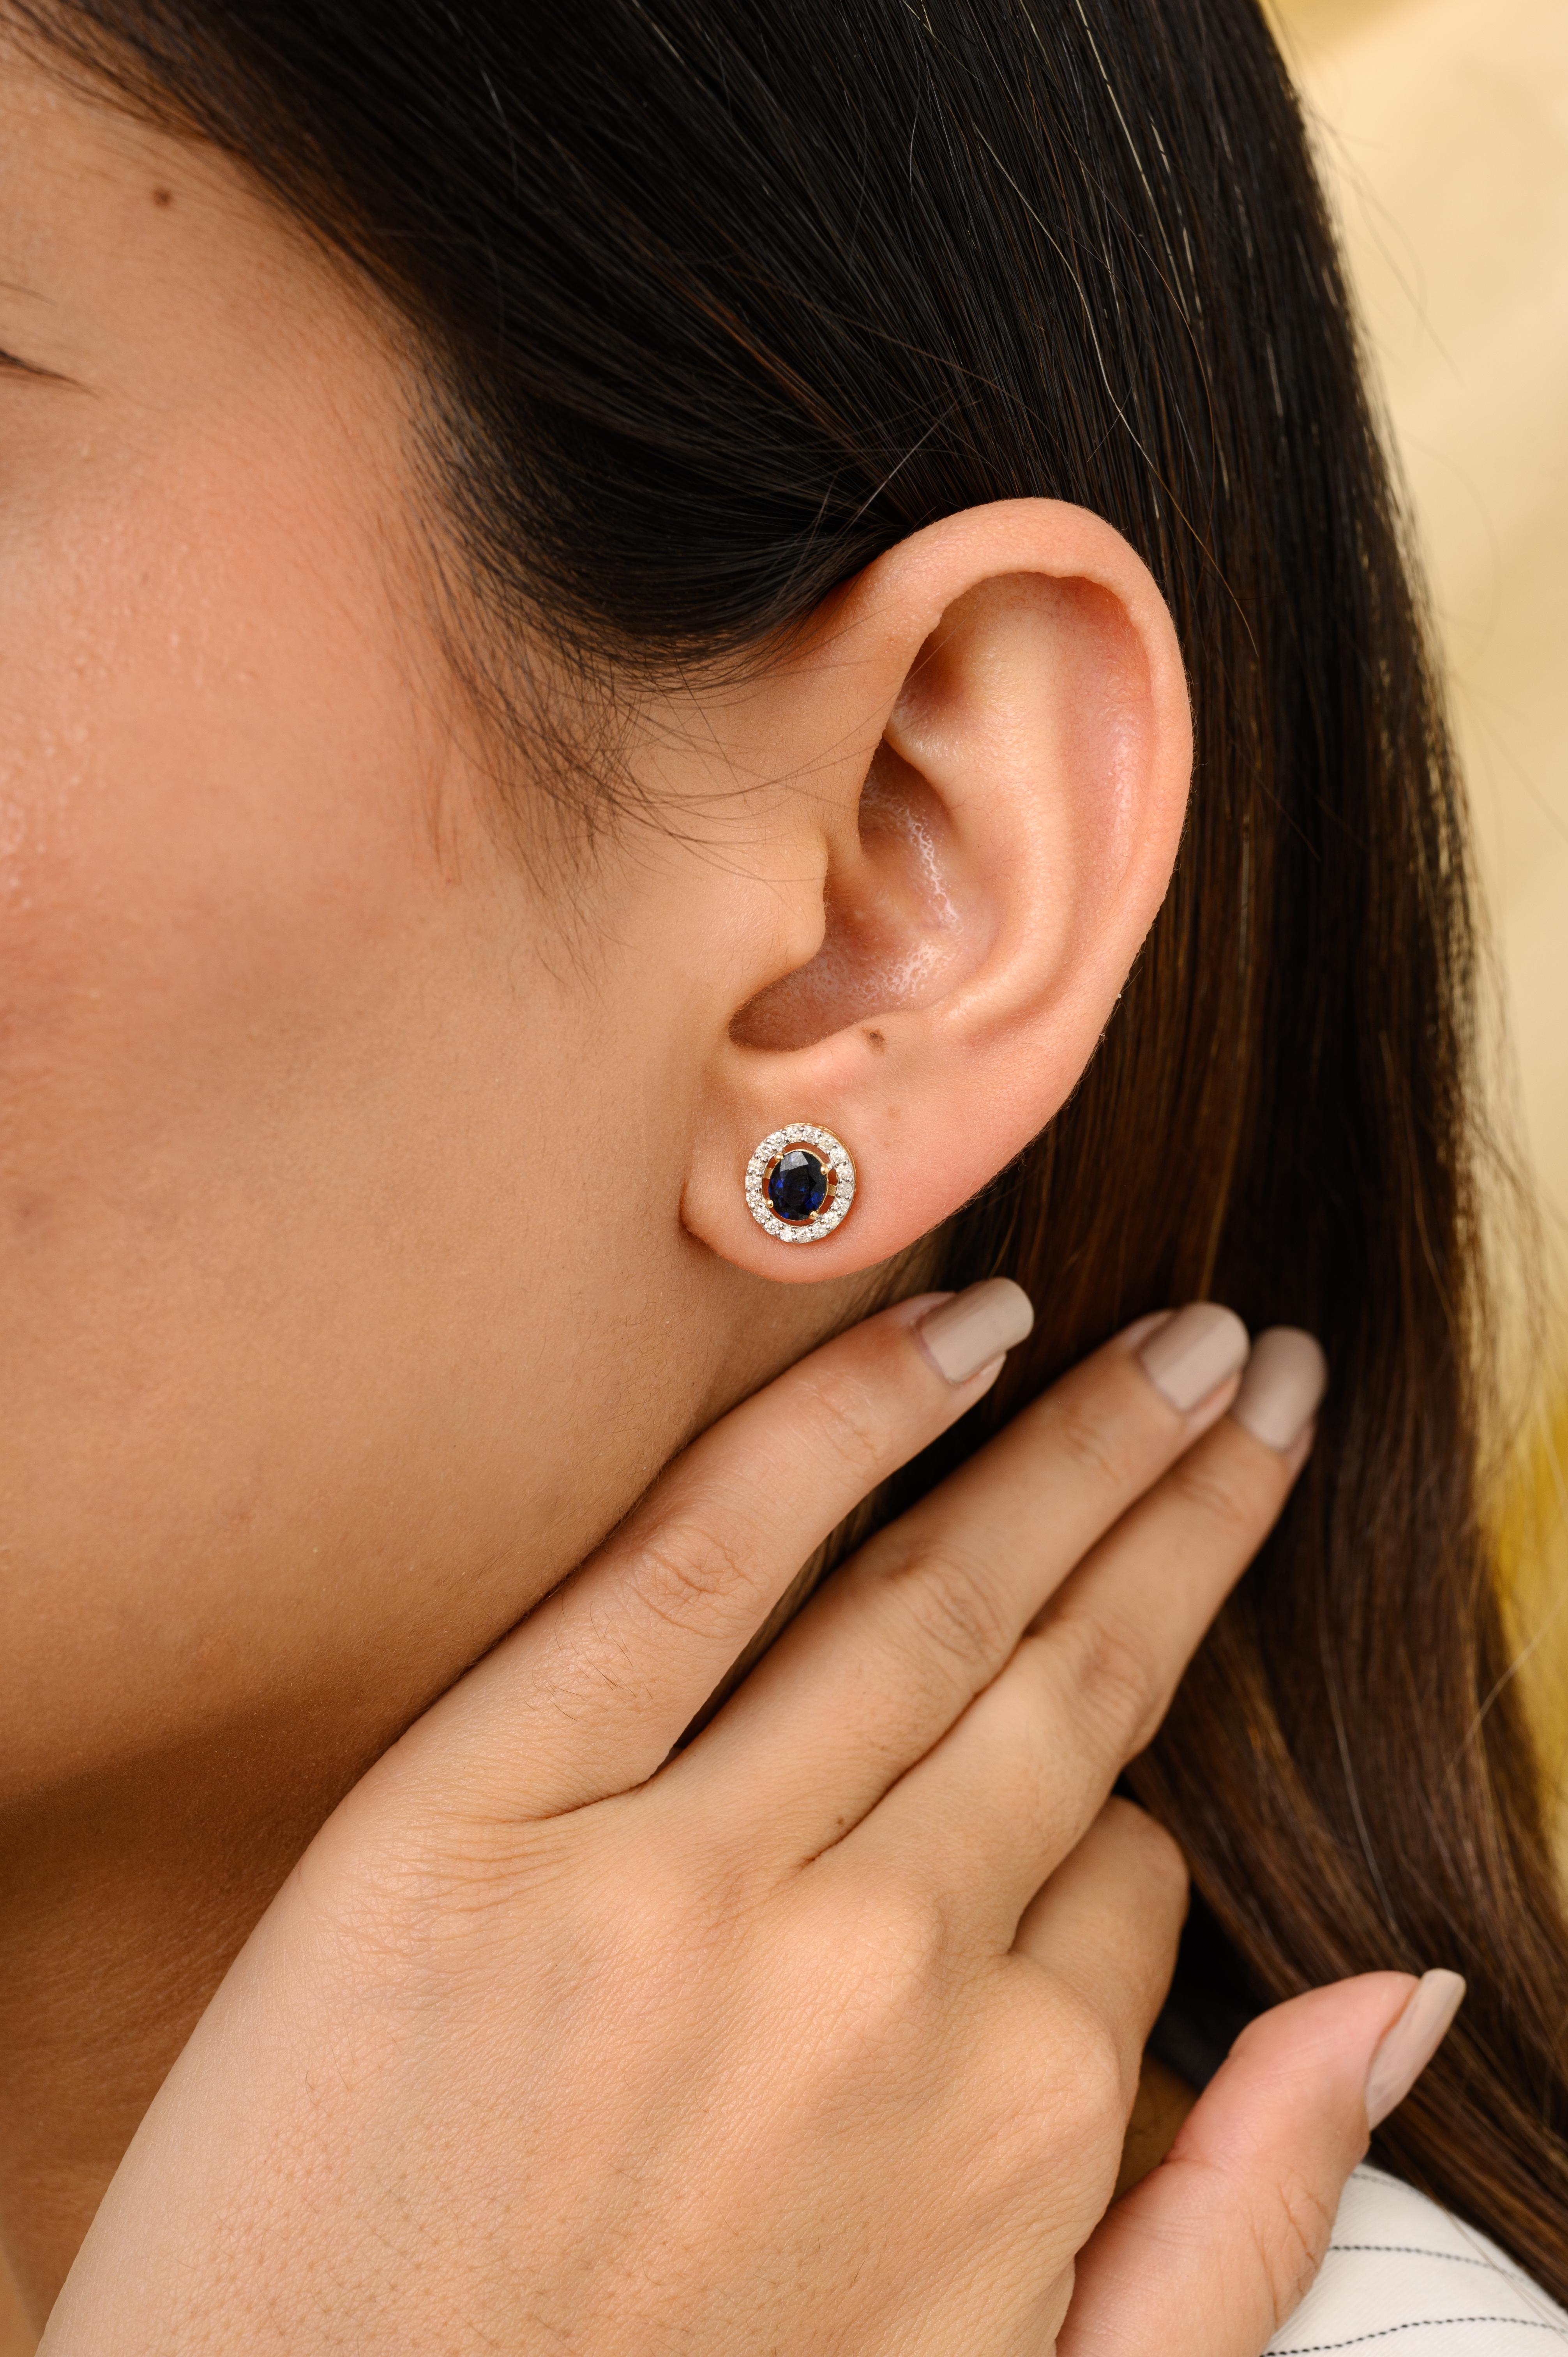 Blue Sapphire Halo Diamond Everyday Stud Earrings for Mom in 14K Gold, um mit Ihrem Look ein Statement zu setzen. Sie brauchen Ohrstecker, um mit Ihrem Look ein Statement zu setzen. Diese Ohrringe sorgen für einen funkelnden, luxuriösen Look mit